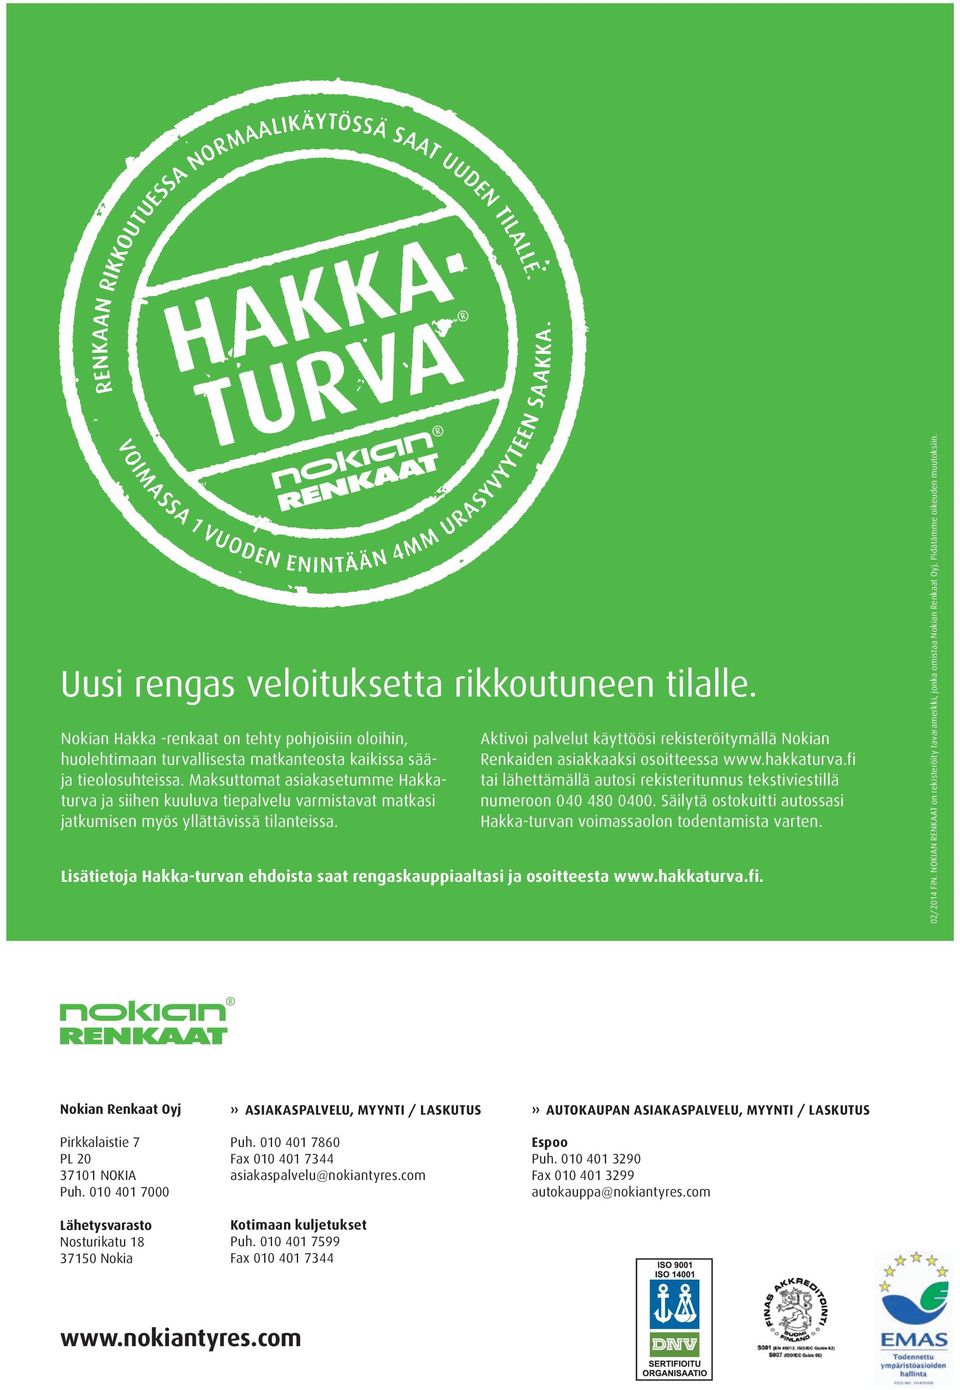 Aktivoi palvelut käyttöösi rekisteröitymällä Nokian Renkaiden asiakkaaksi osoitteessa www.hakkaturva.fi tai lähettämällä autosi rekisteritunnus tekstiviestillä numeroon 040 480 0400.